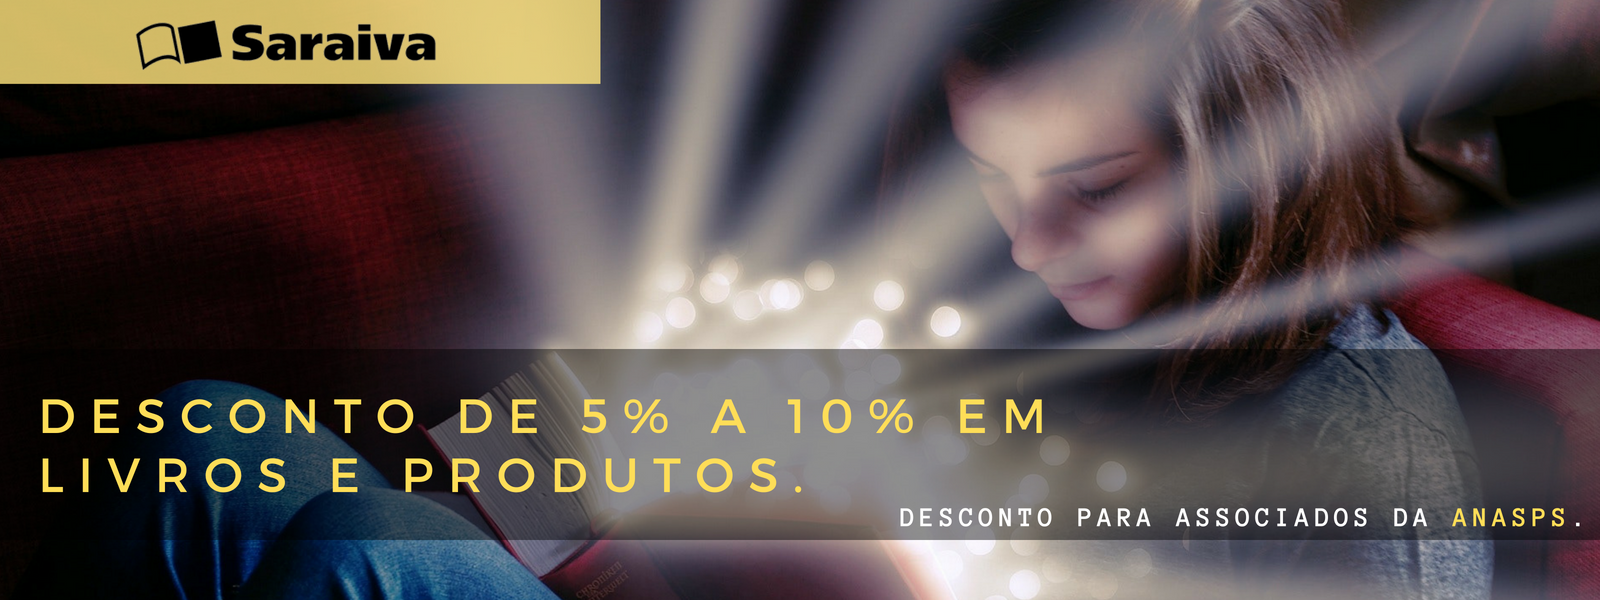 Livraria Saraiva oferece descontos de 5% a 10%